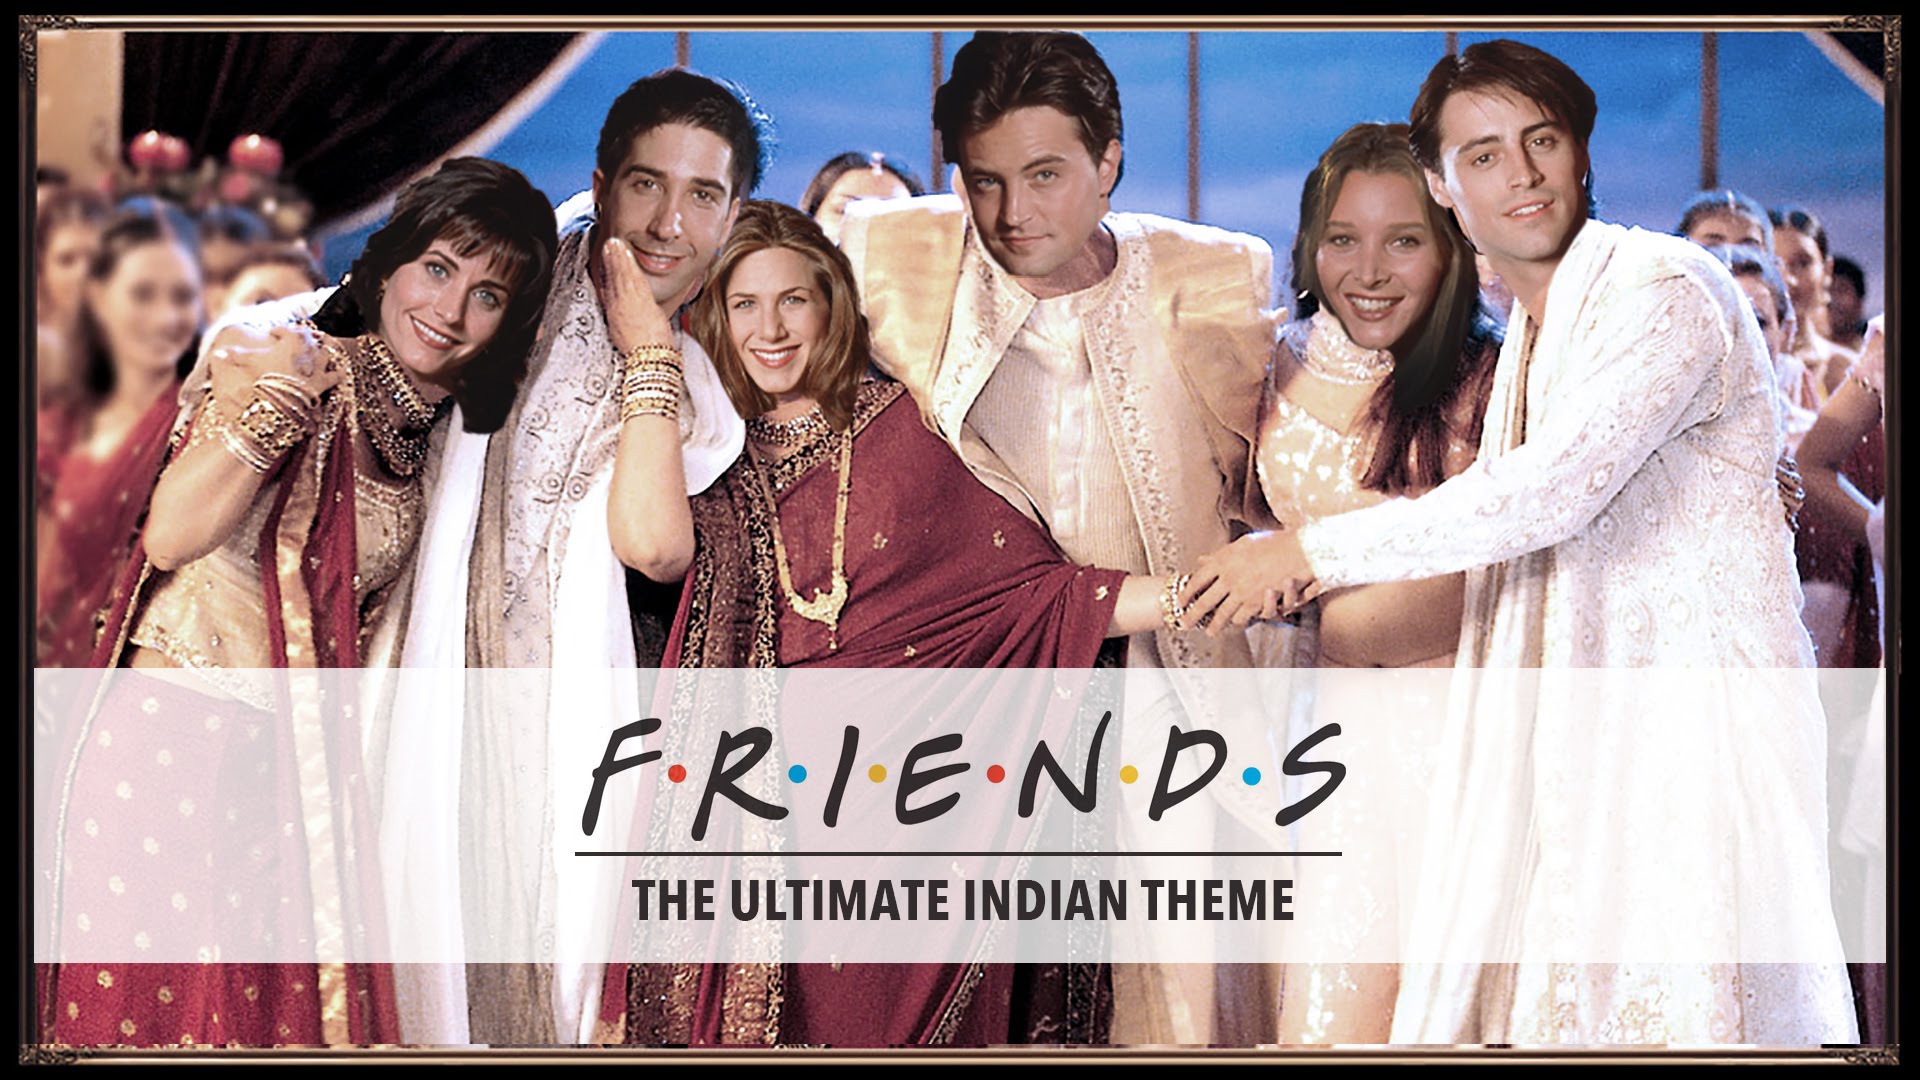 The F.R.I.E.N.D.S Theme song has an Indian Twist